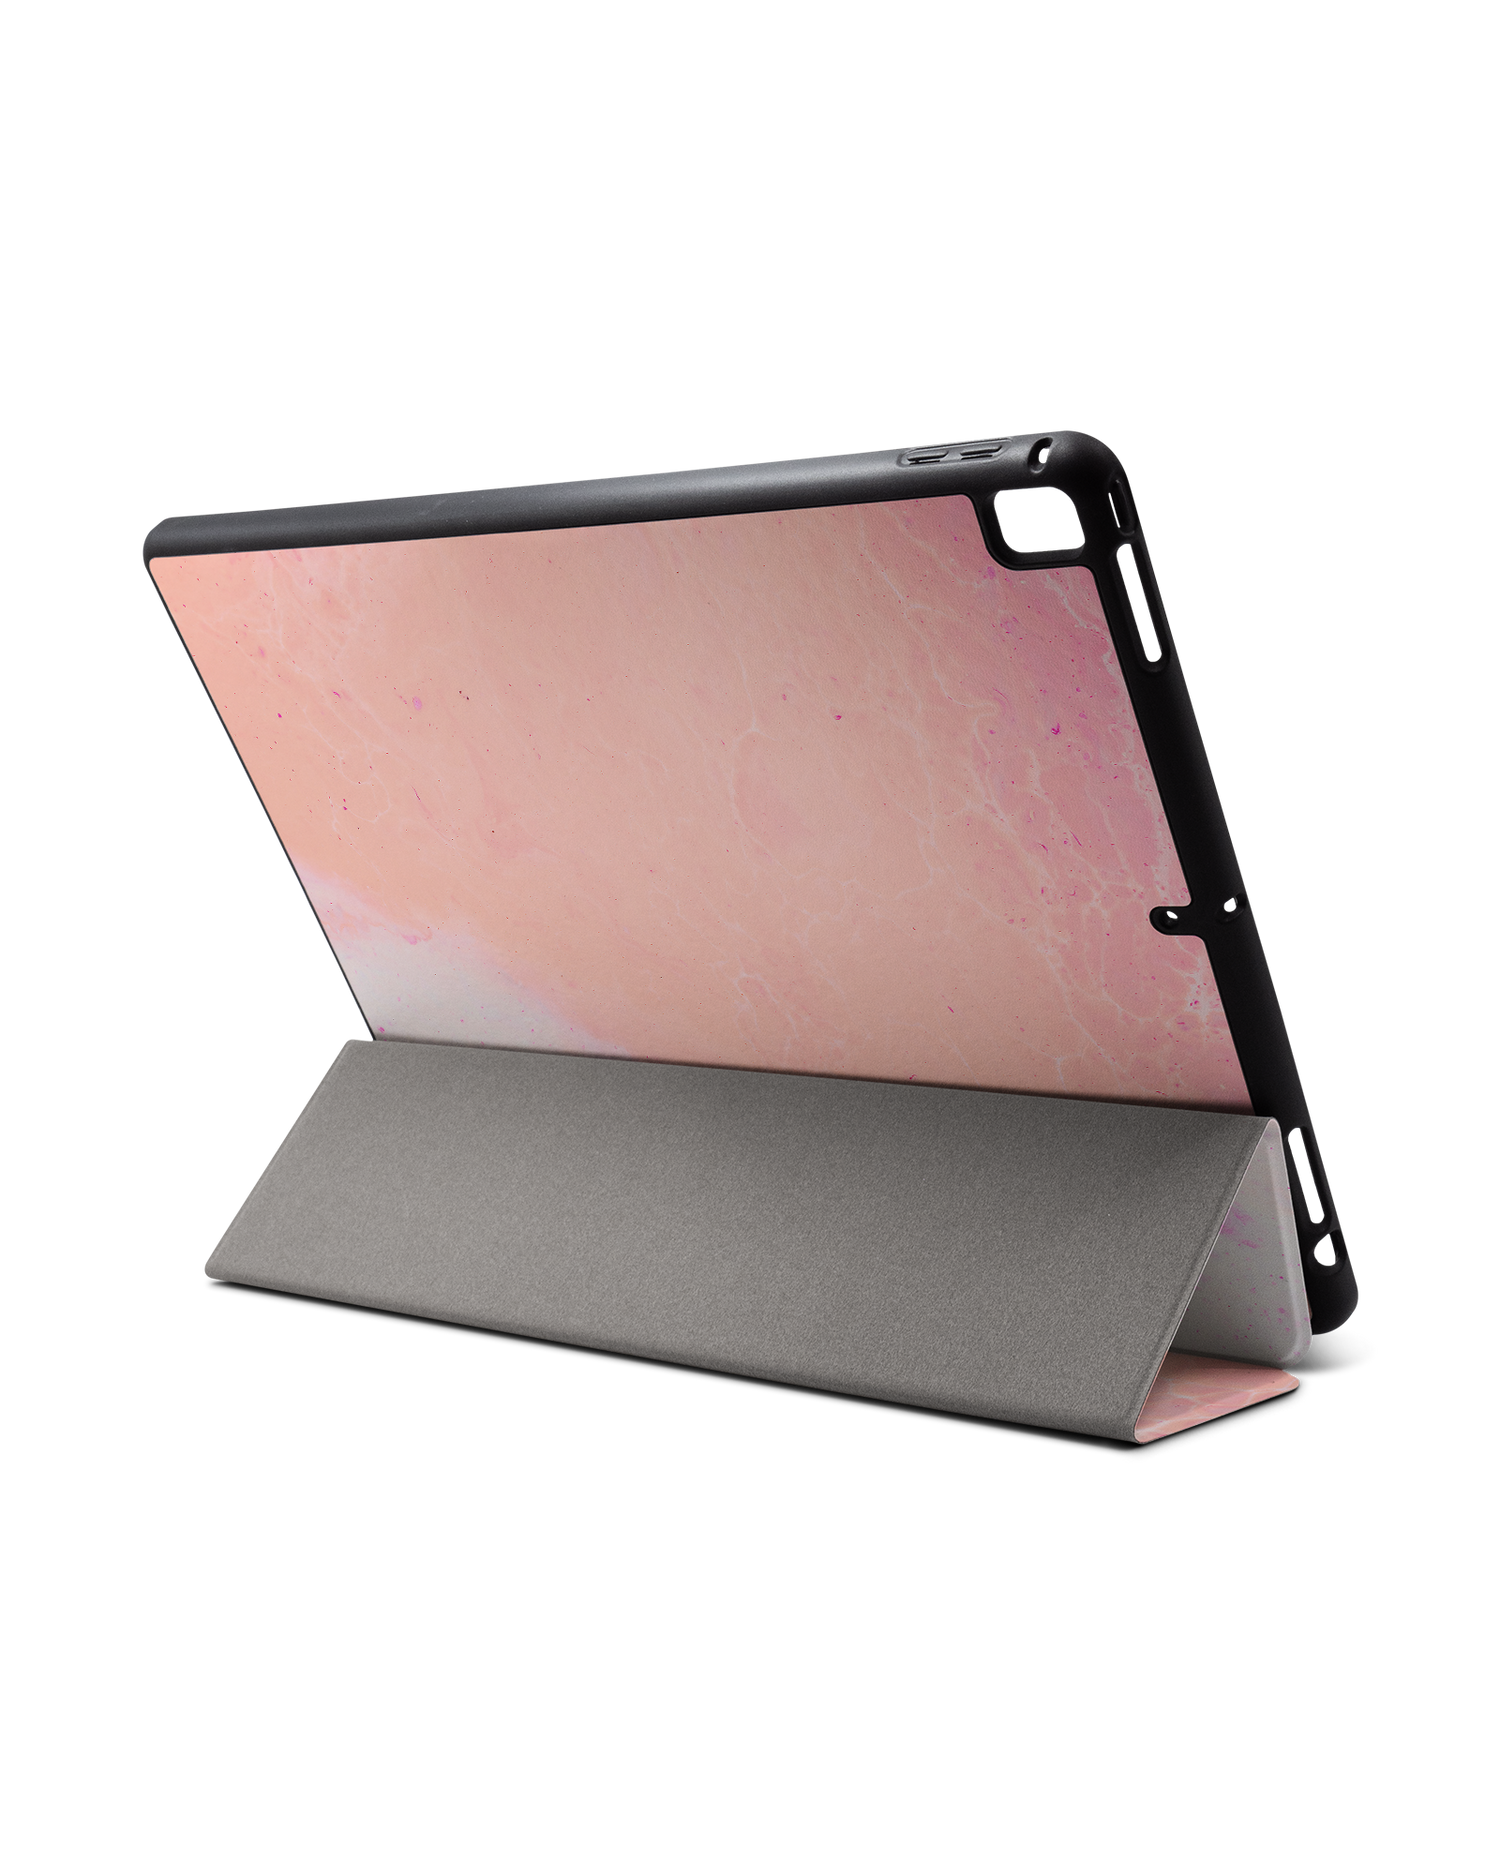 Peaches & Cream Marble iPad Hülle mit Stifthalter für Apple iPad Pro 2 12.9'' (2017): Aufgestellt im Querformat von hinten